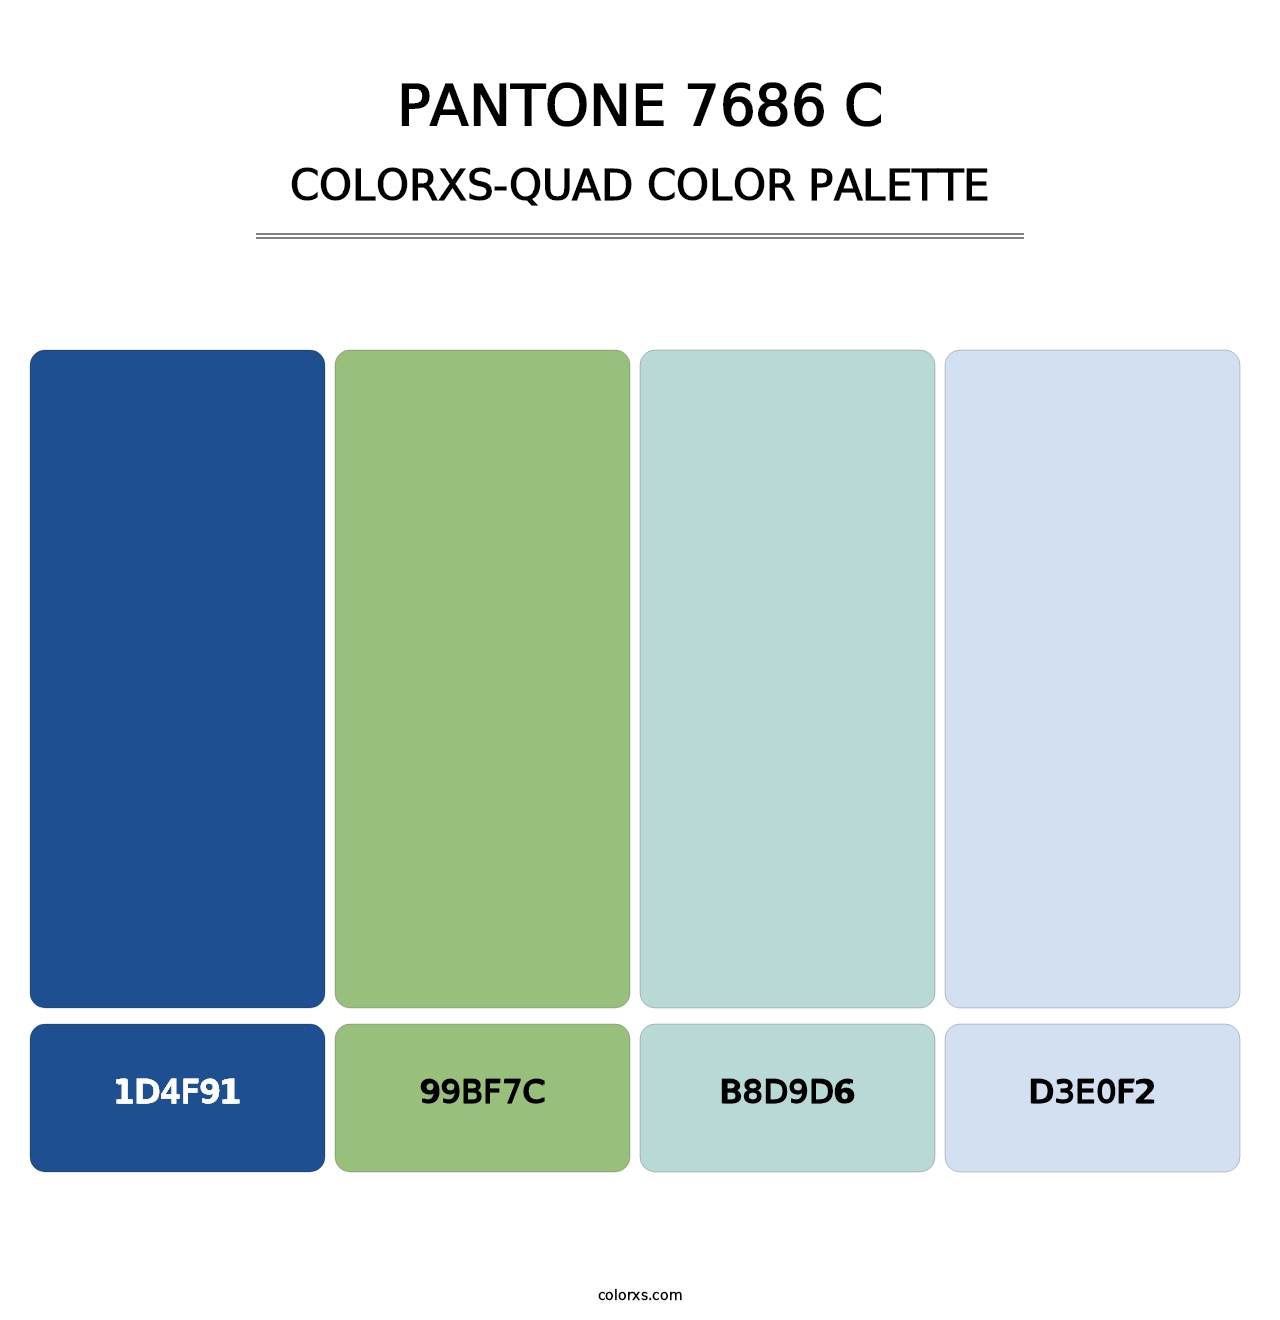 PANTONE 7686 C - Colorxs Quad Palette